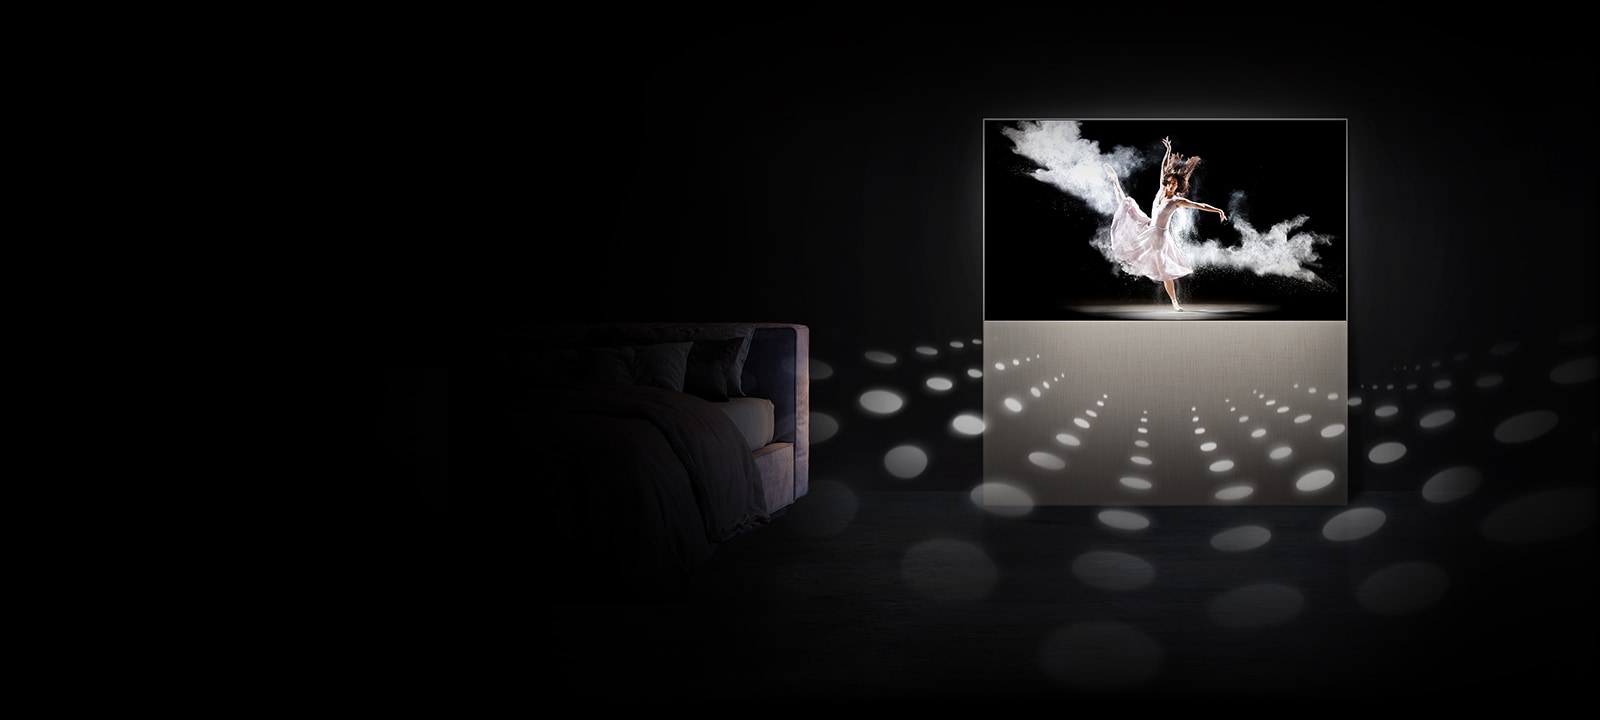 Телевизор EASEL в полноэкранном режиме с балериной на экране. Круги, символизирующие звуковые ноты, отходят от телевизора и демонстрируют мощность звука, достаточную для того, чтобы наполнить комнату.